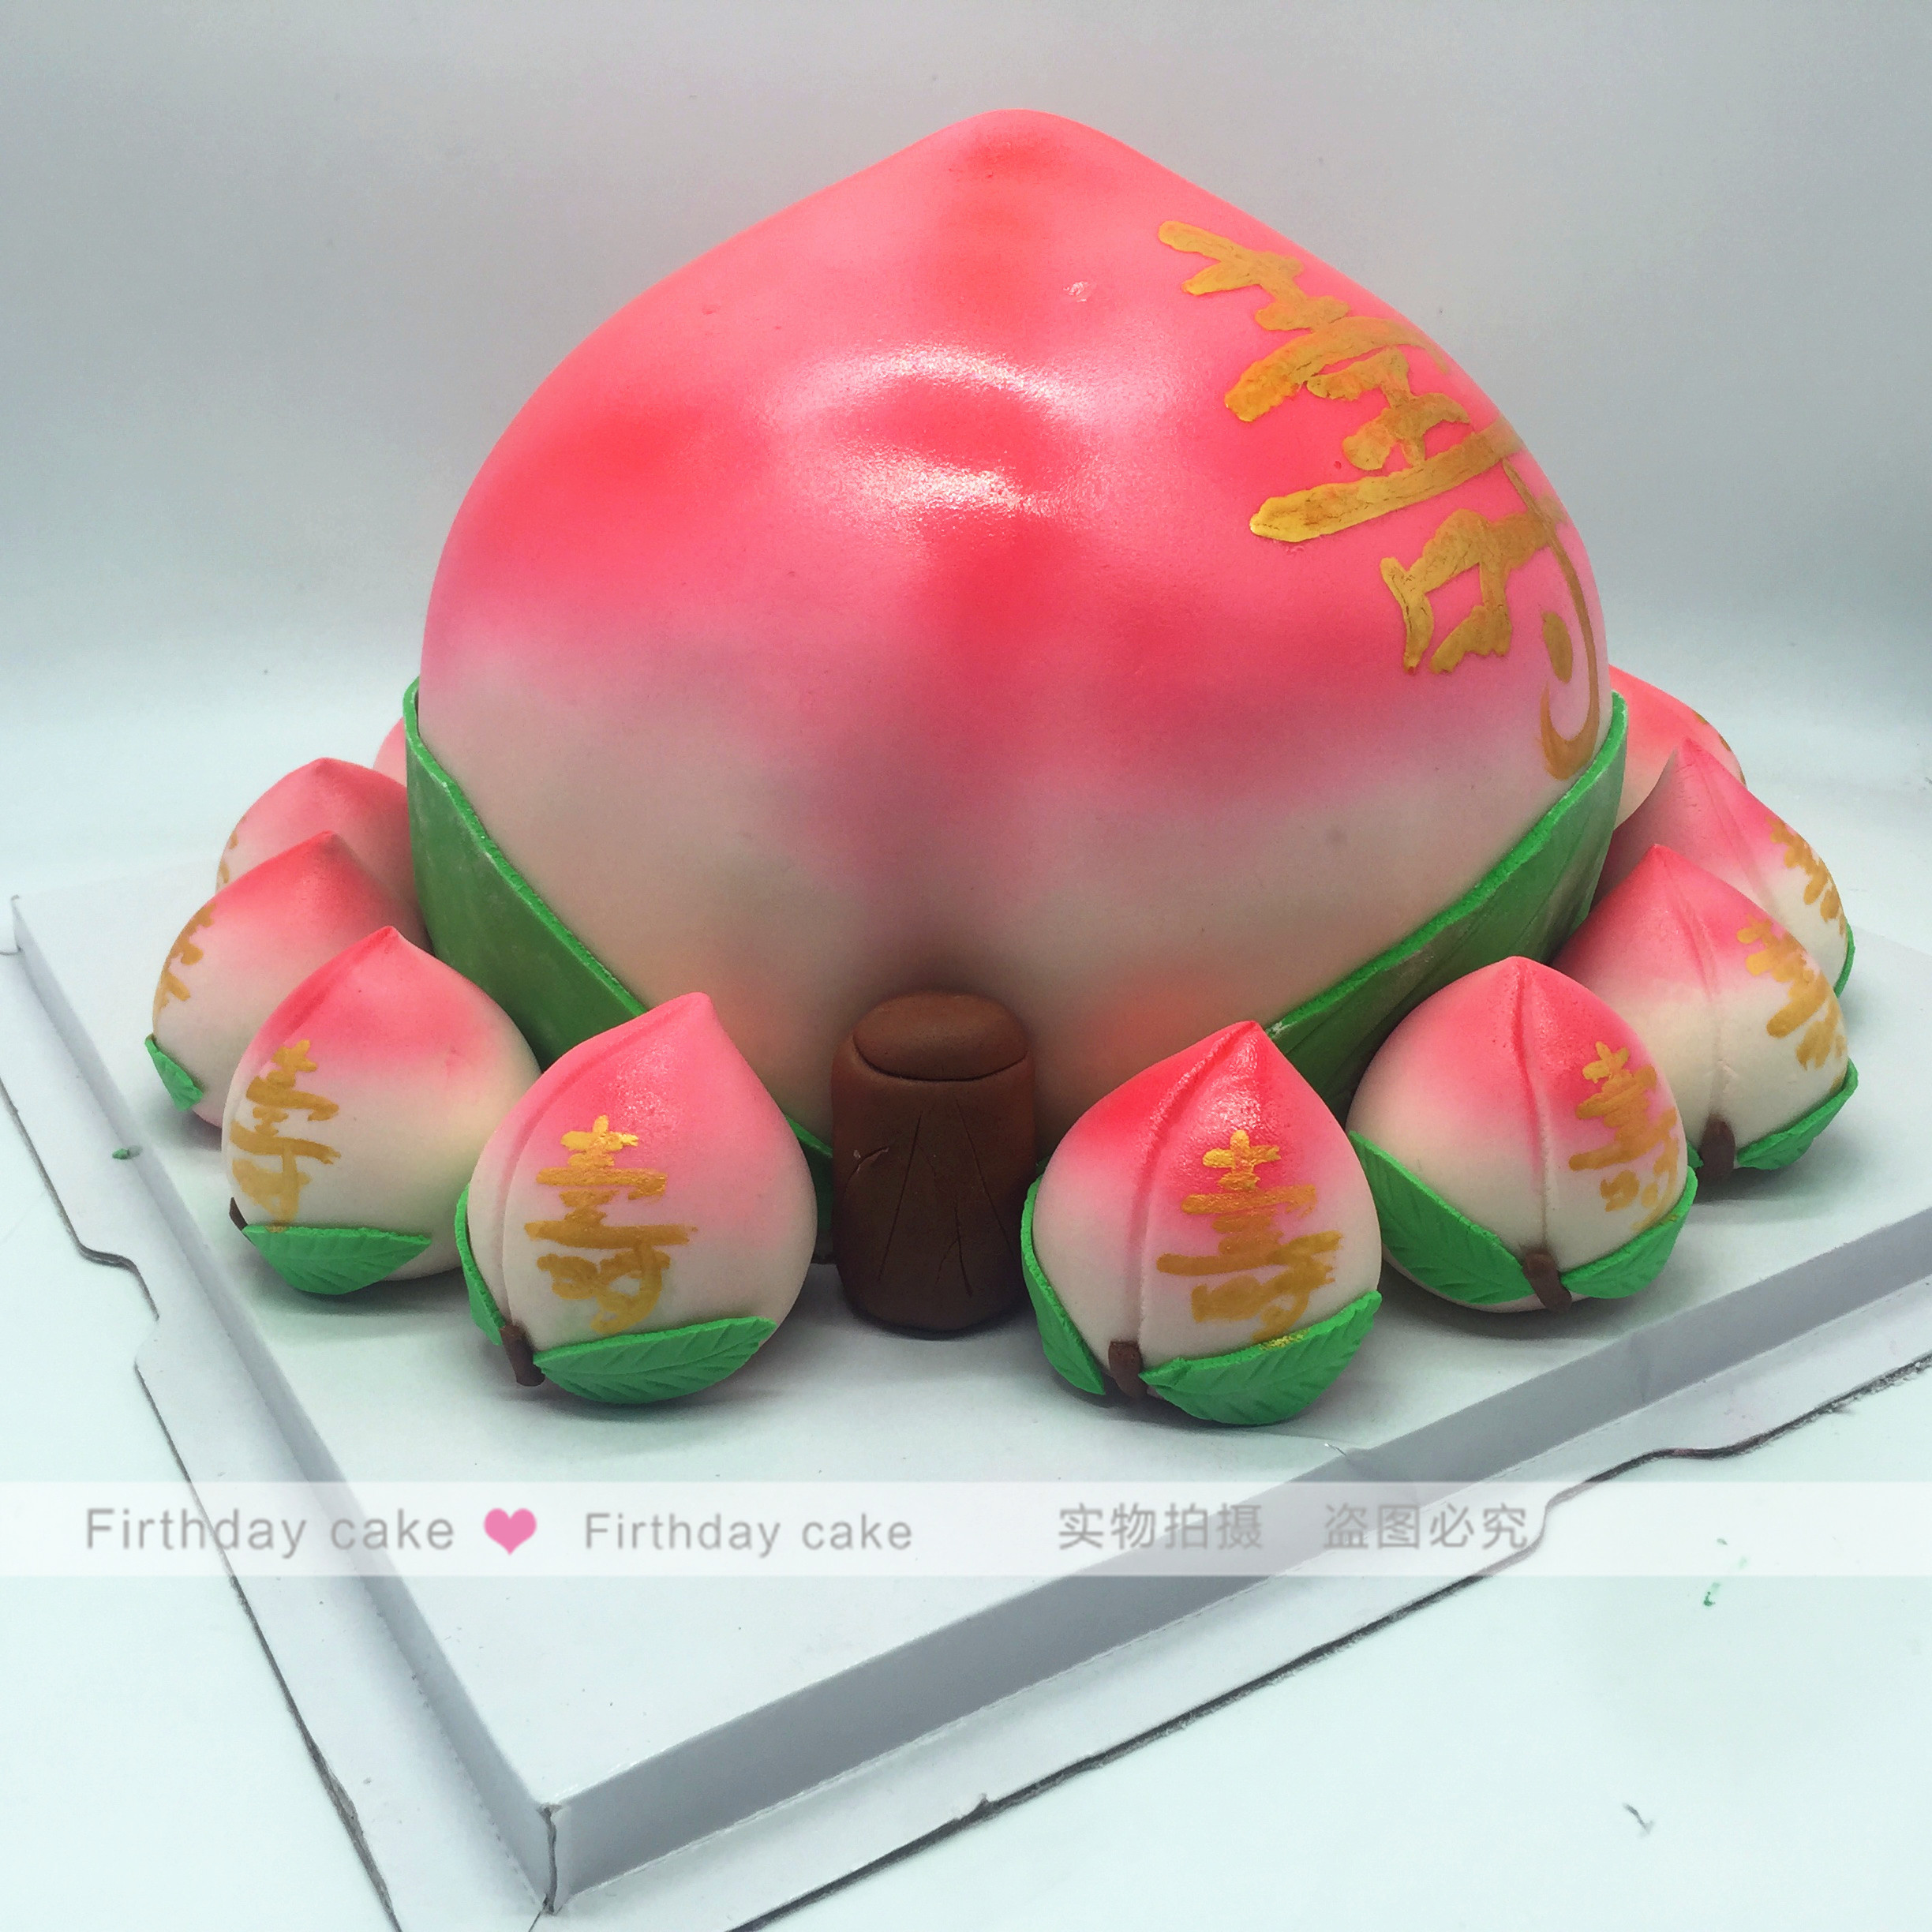 生日蛋糕北京上海杭州同城翻糖蛋糕 定制蛋糕 寿桃蛋糕 创意蛋糕